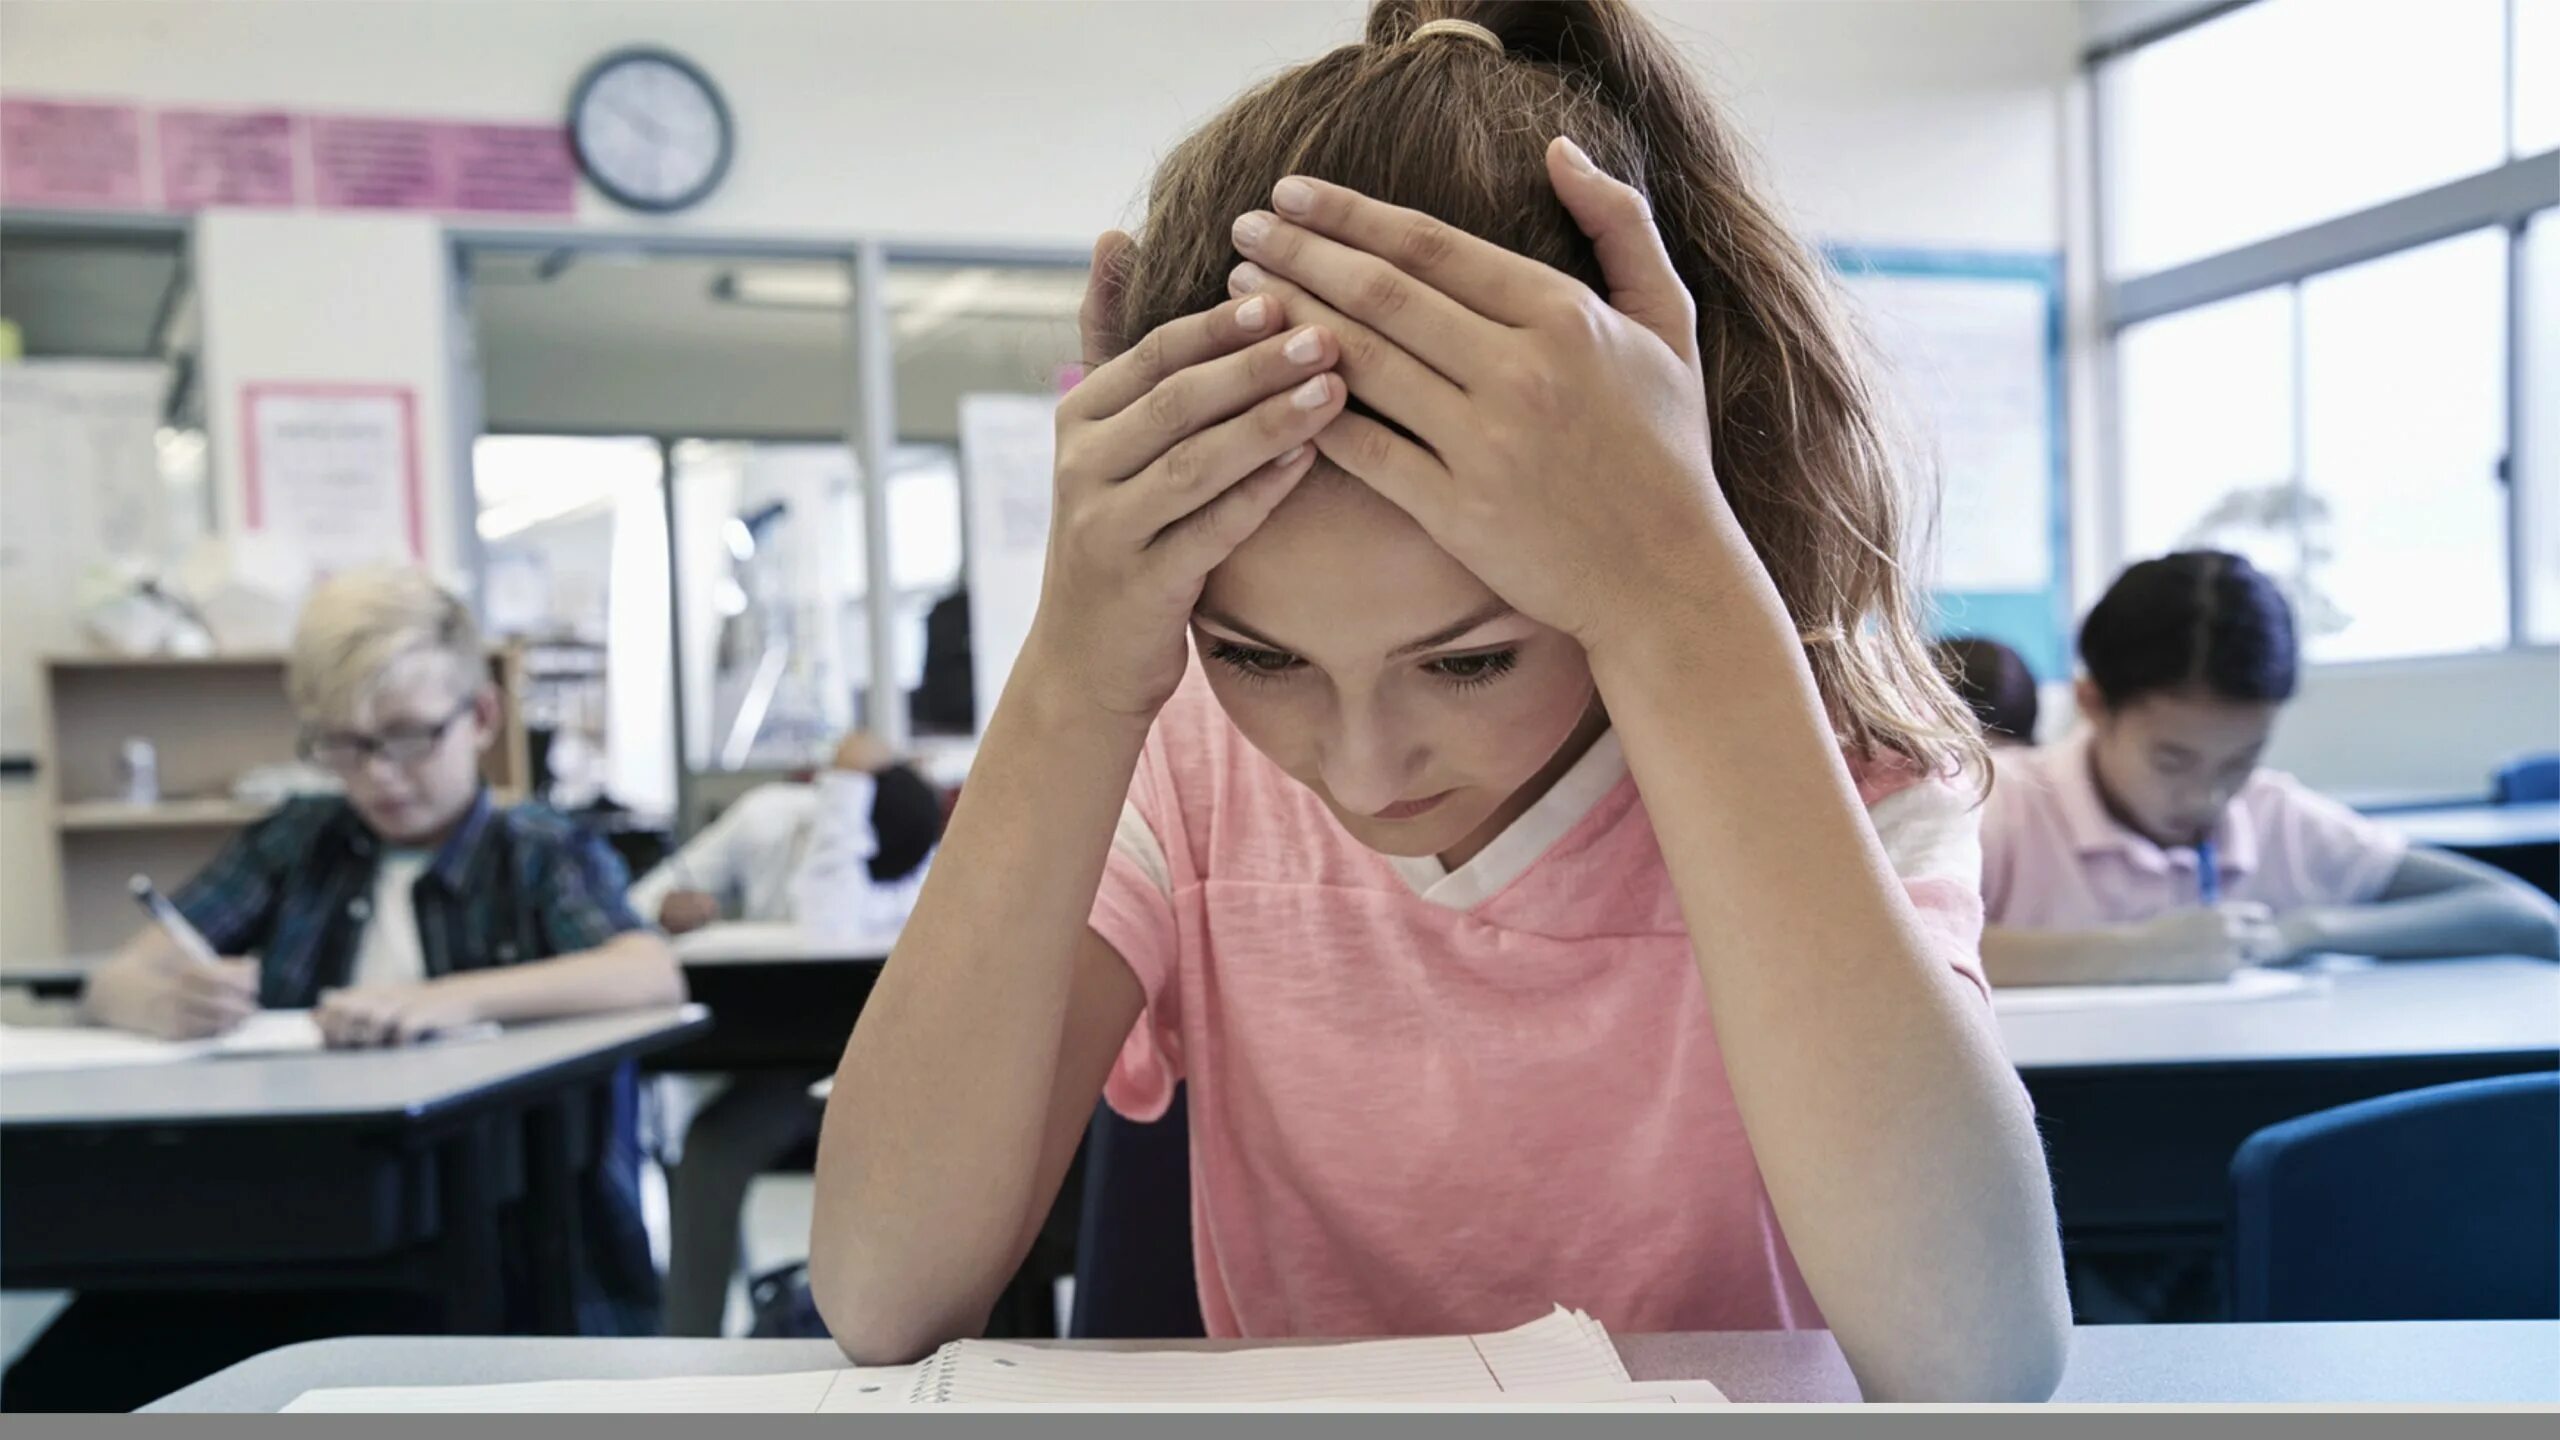 Дети на экзамене. Тревожность школьников. Стресс на экзамене. Учеба грусть. Sometimes difficult